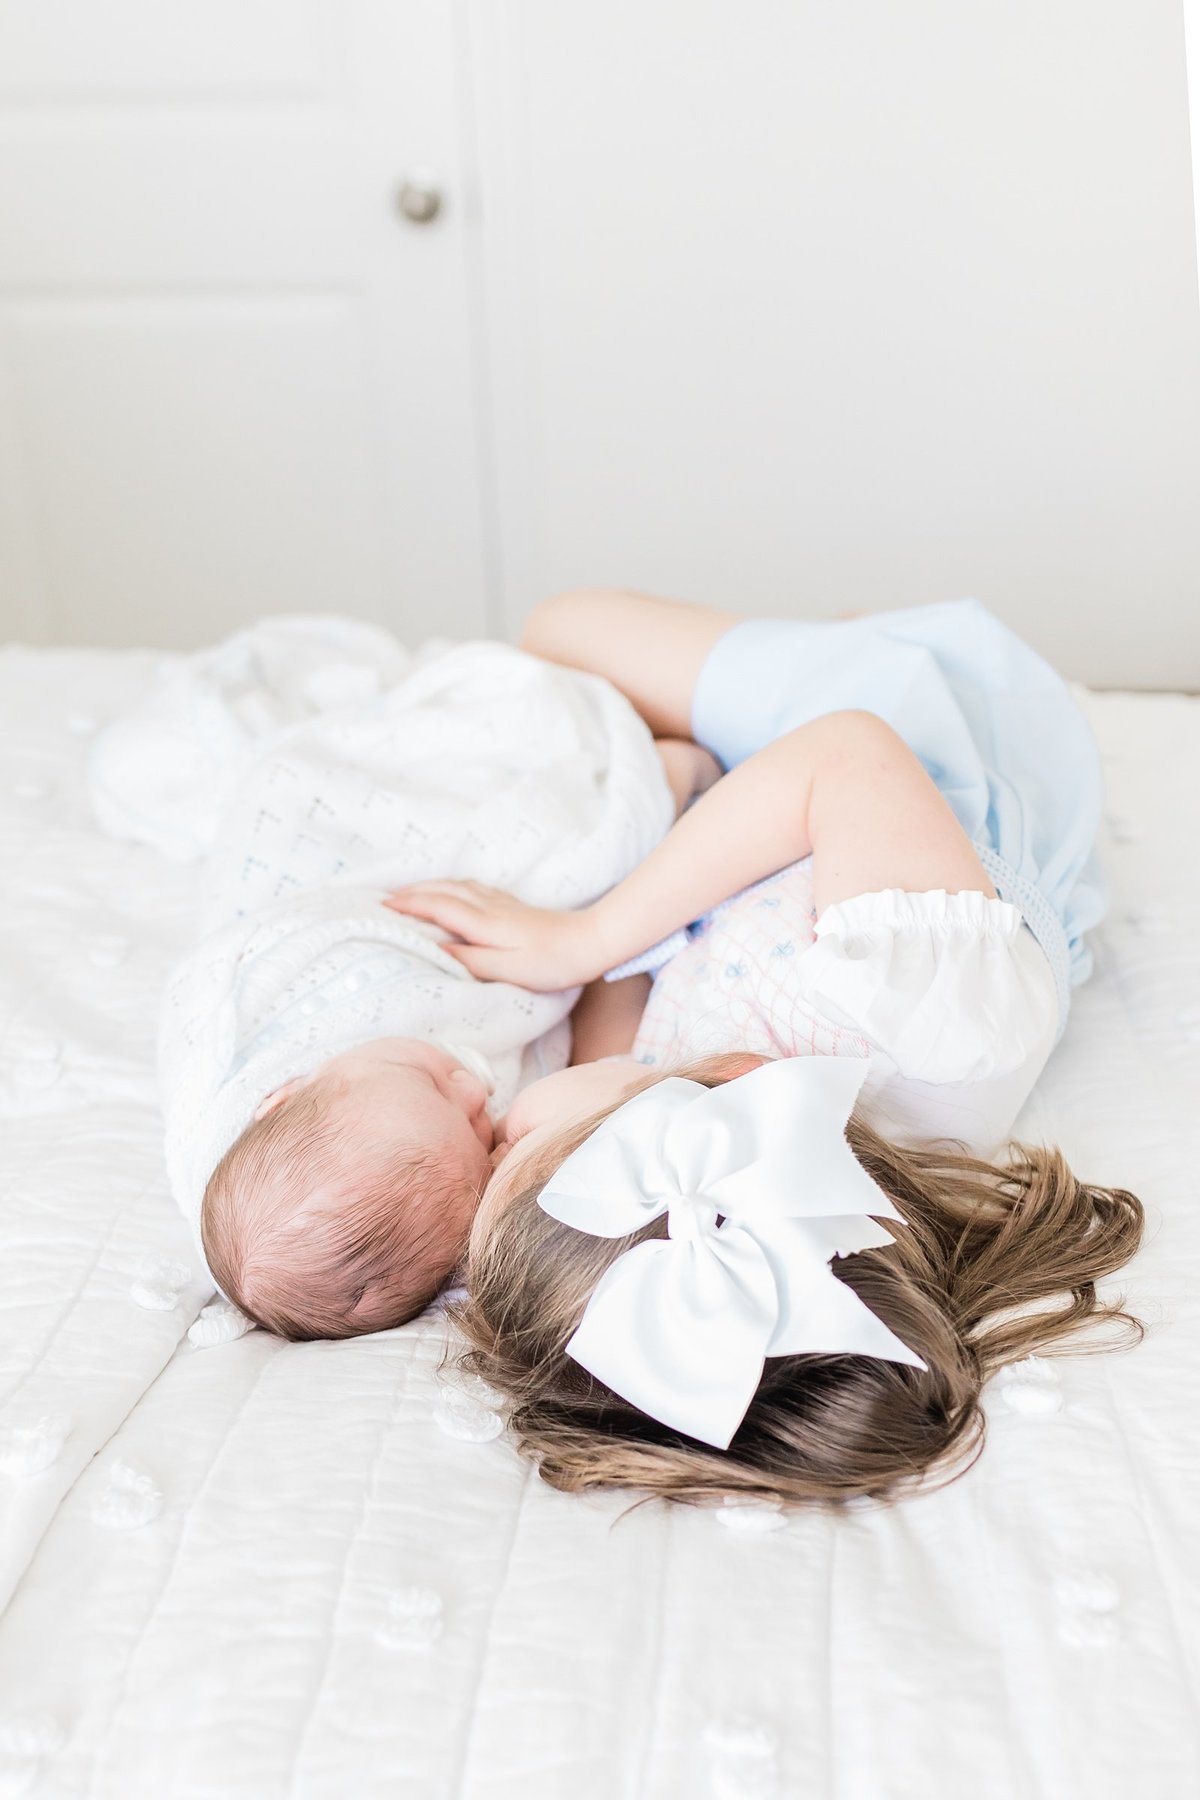 Charleston-Newborn-Photographer-Lifestyle_0049